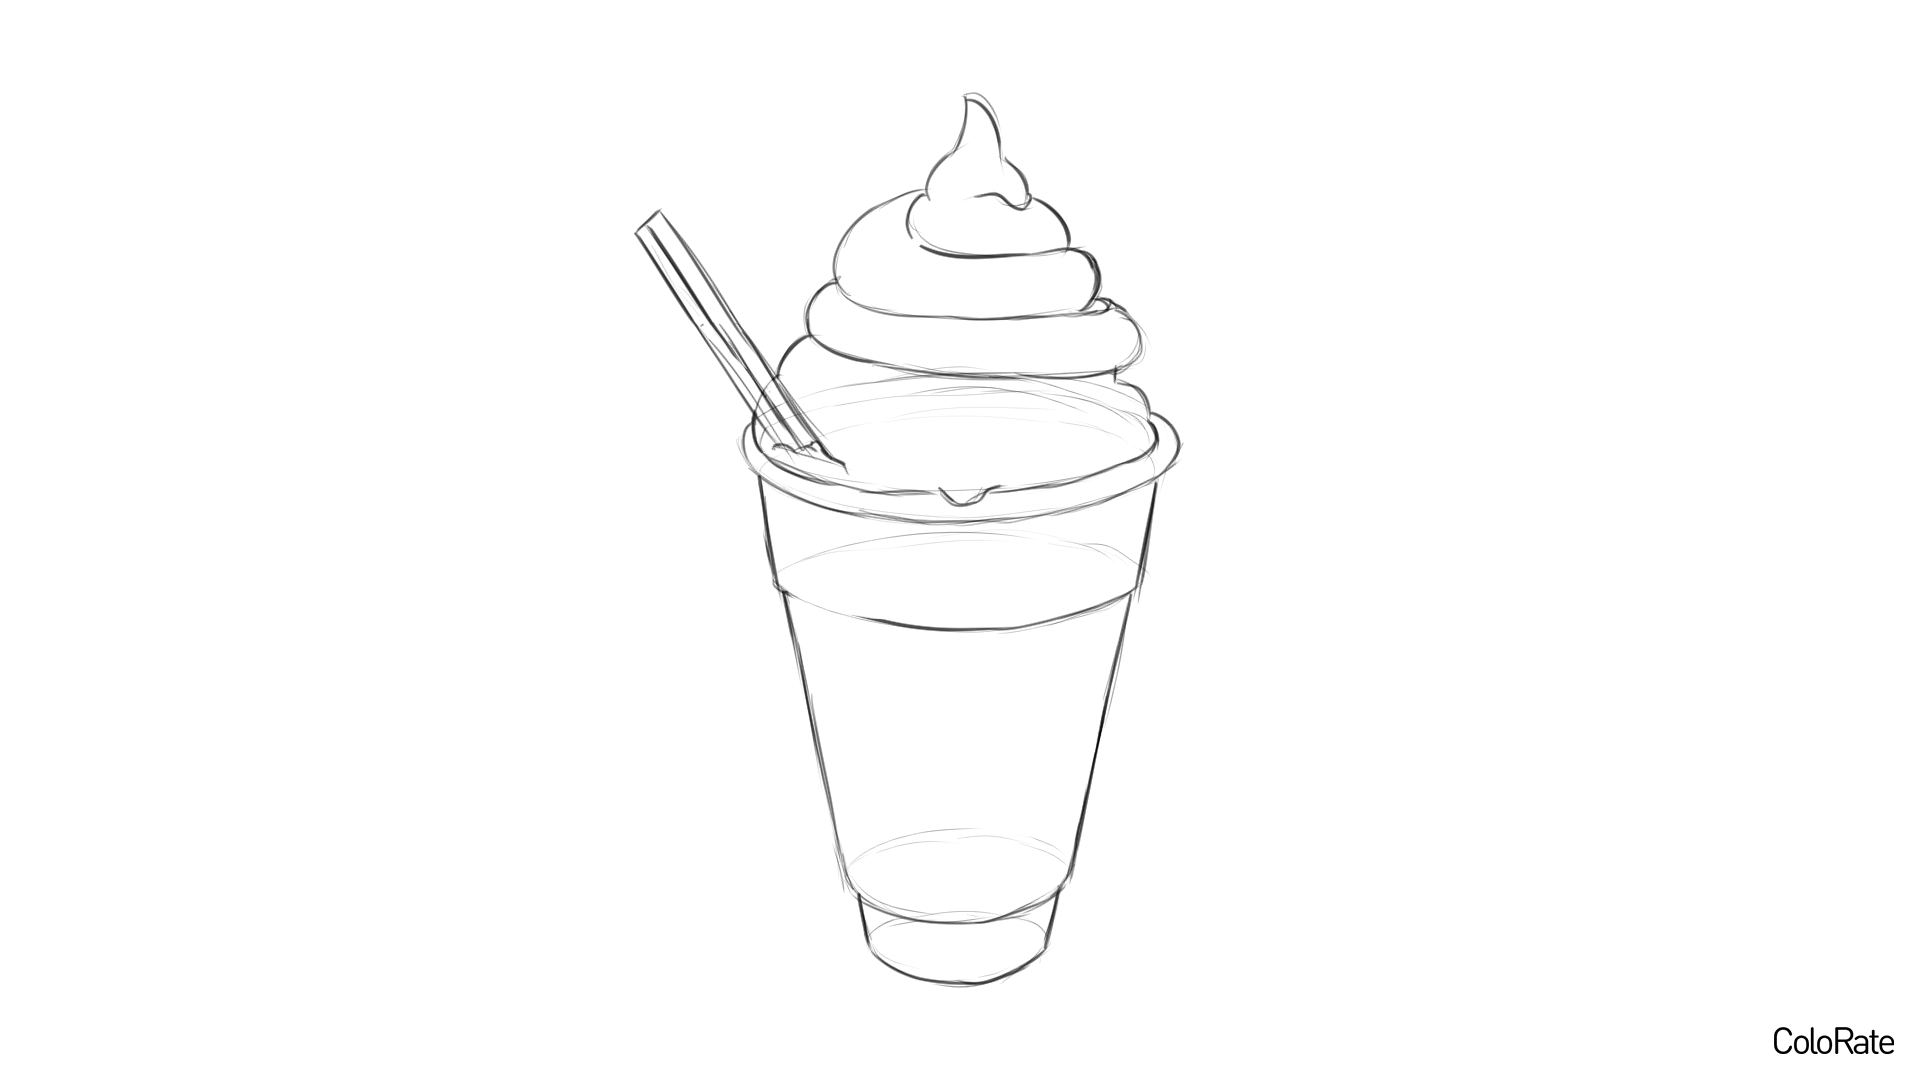 Карандашный рисунок мороженого - шаг 4 - проработка рисунка и контуров